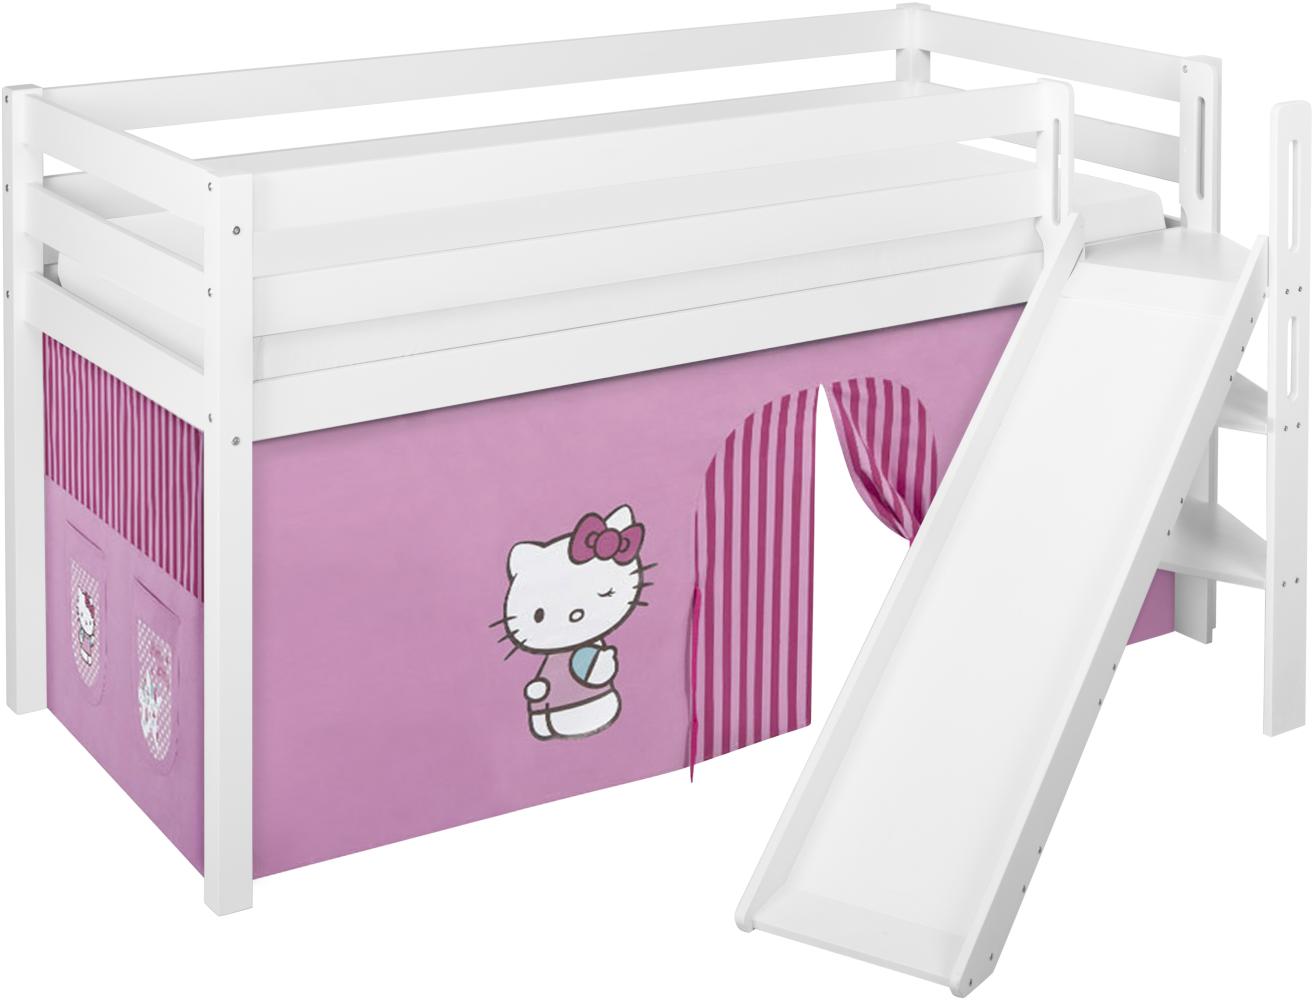 Lilokids 'Jelle' Spielbett 90 x 190 cm, Hello Kitty Rosa, Kiefer massiv, mit schräger Rutsche und Vorhang Bild 1